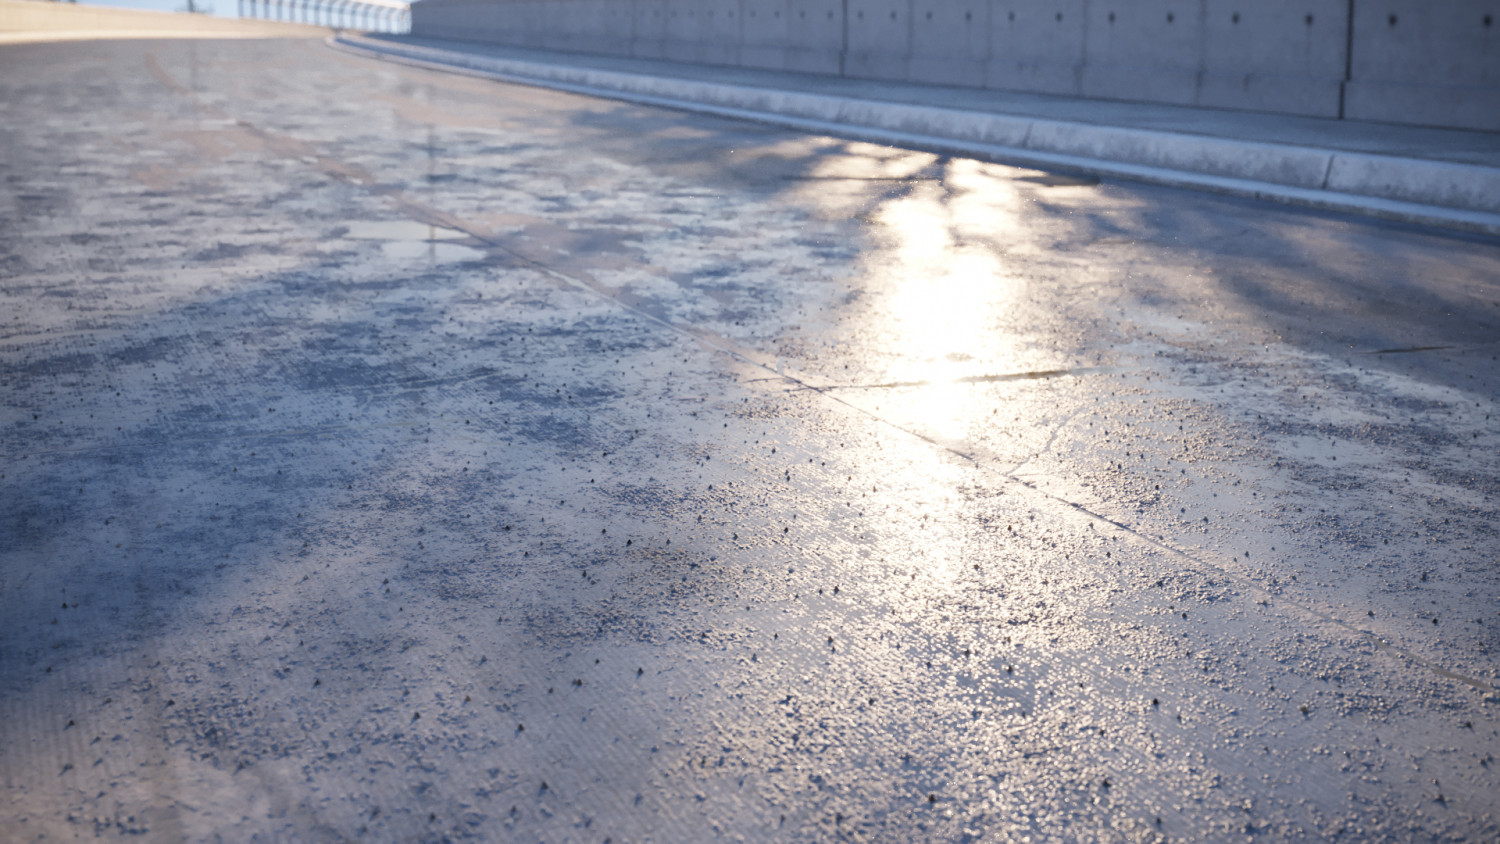 Wet damaged concrete road texture